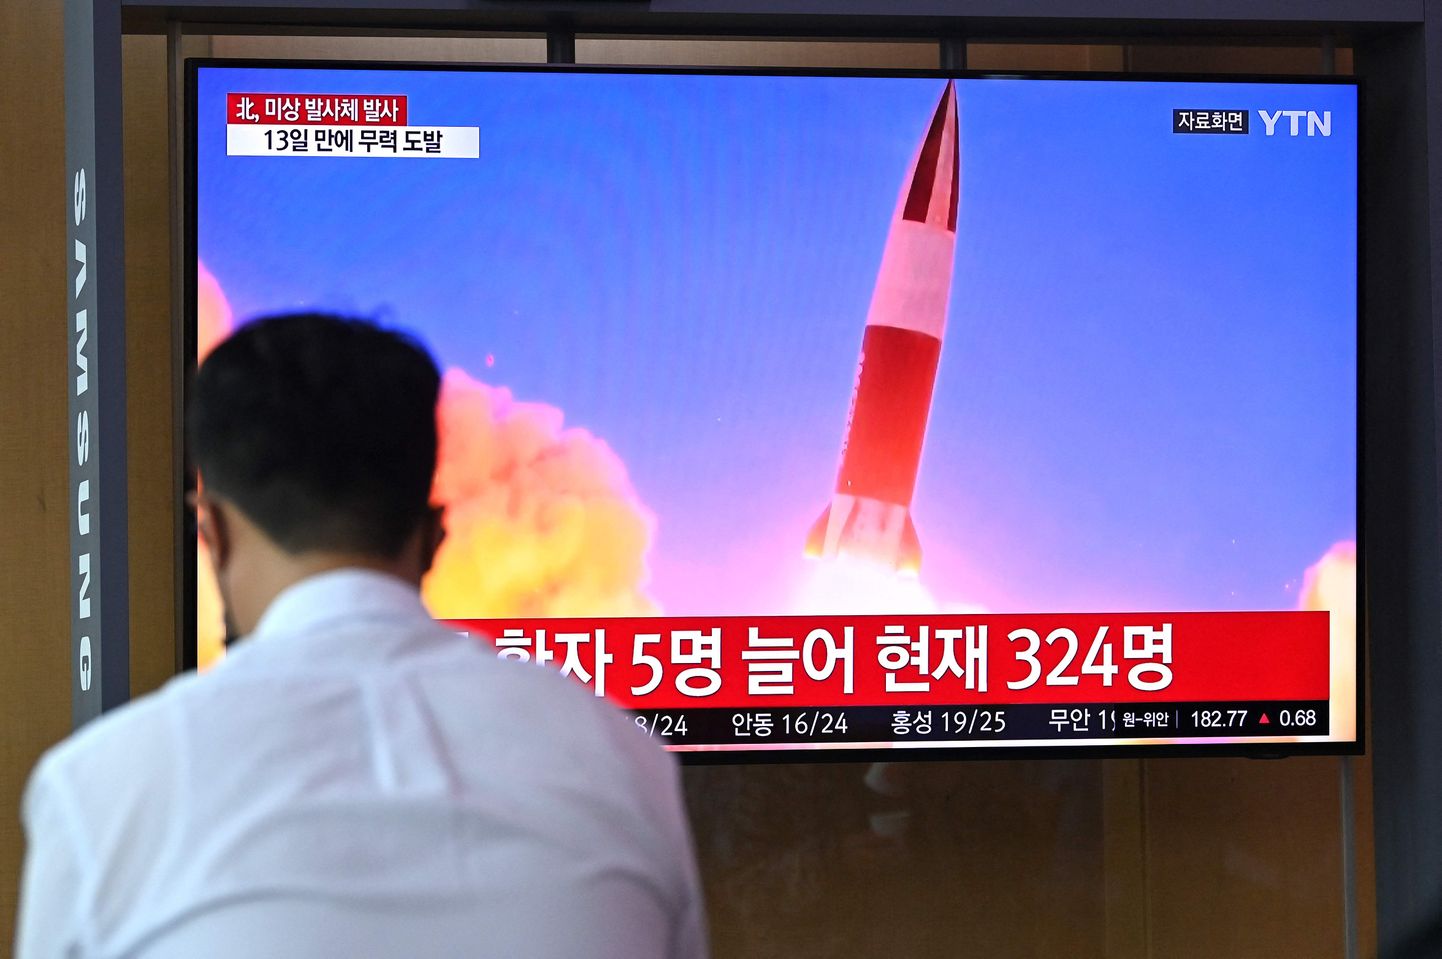 Uudis Põhja-Korea raketikatsetusest Lõuna-Korea televisioonis.